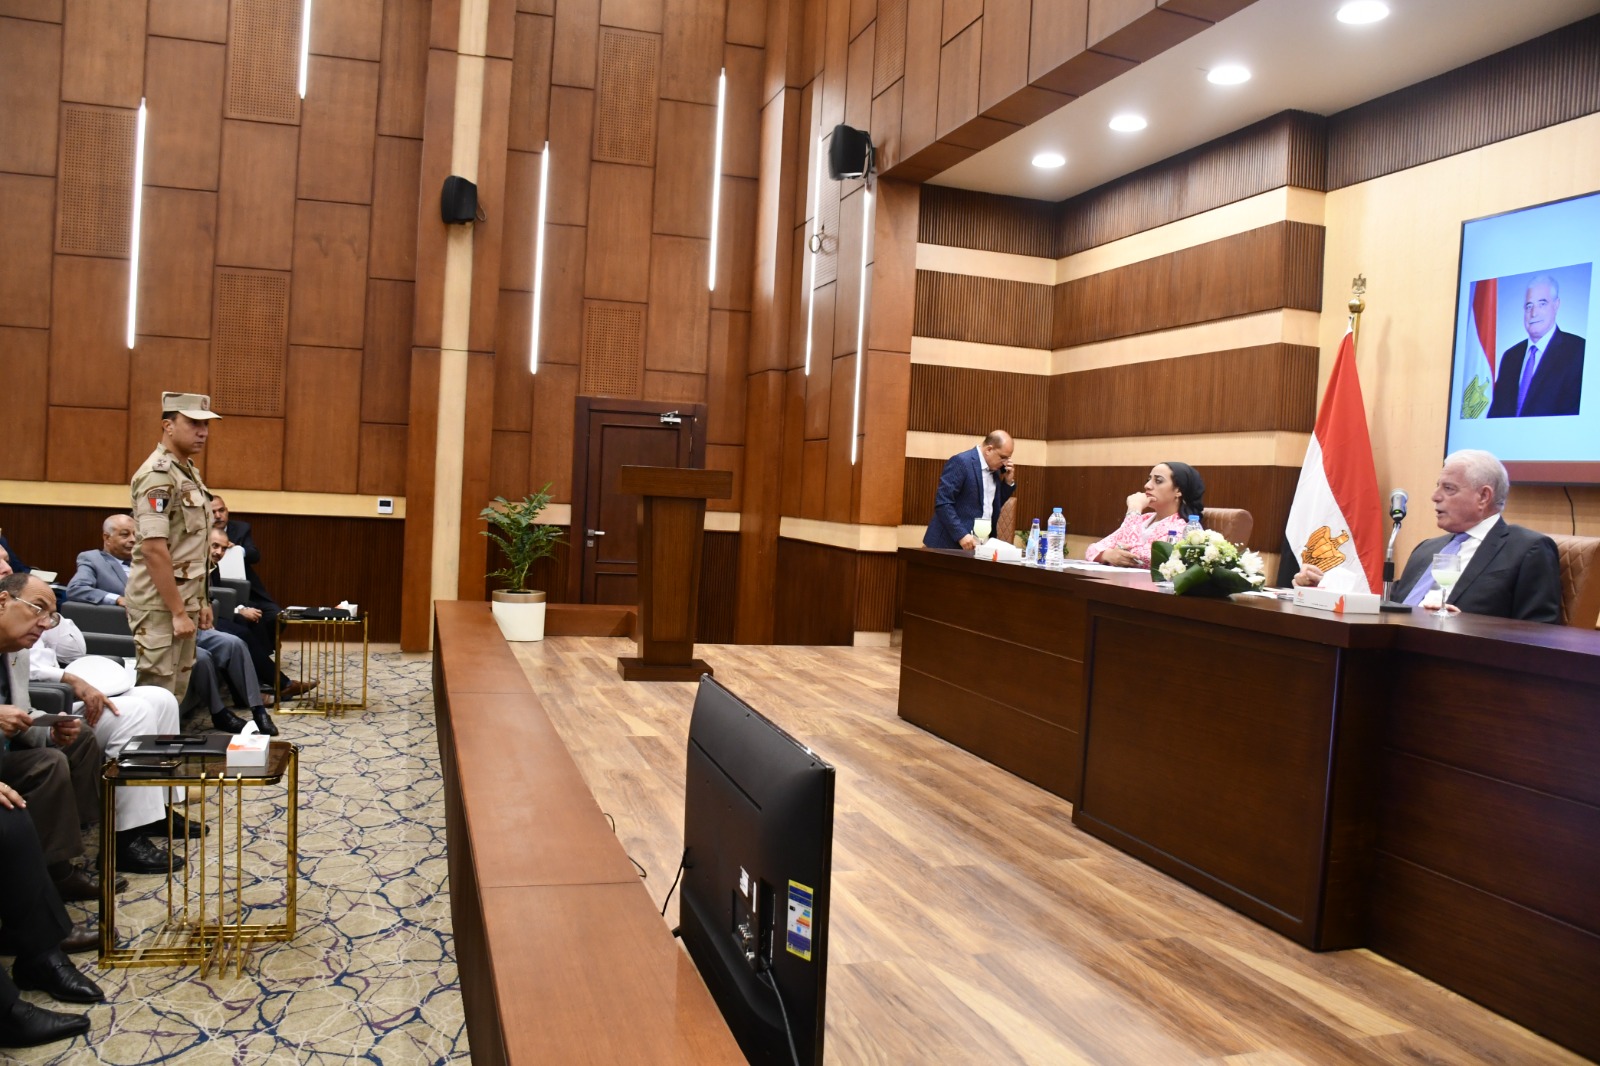  جلسة المجلس التنفيذى بمحافظة جنوب سيناء (7)